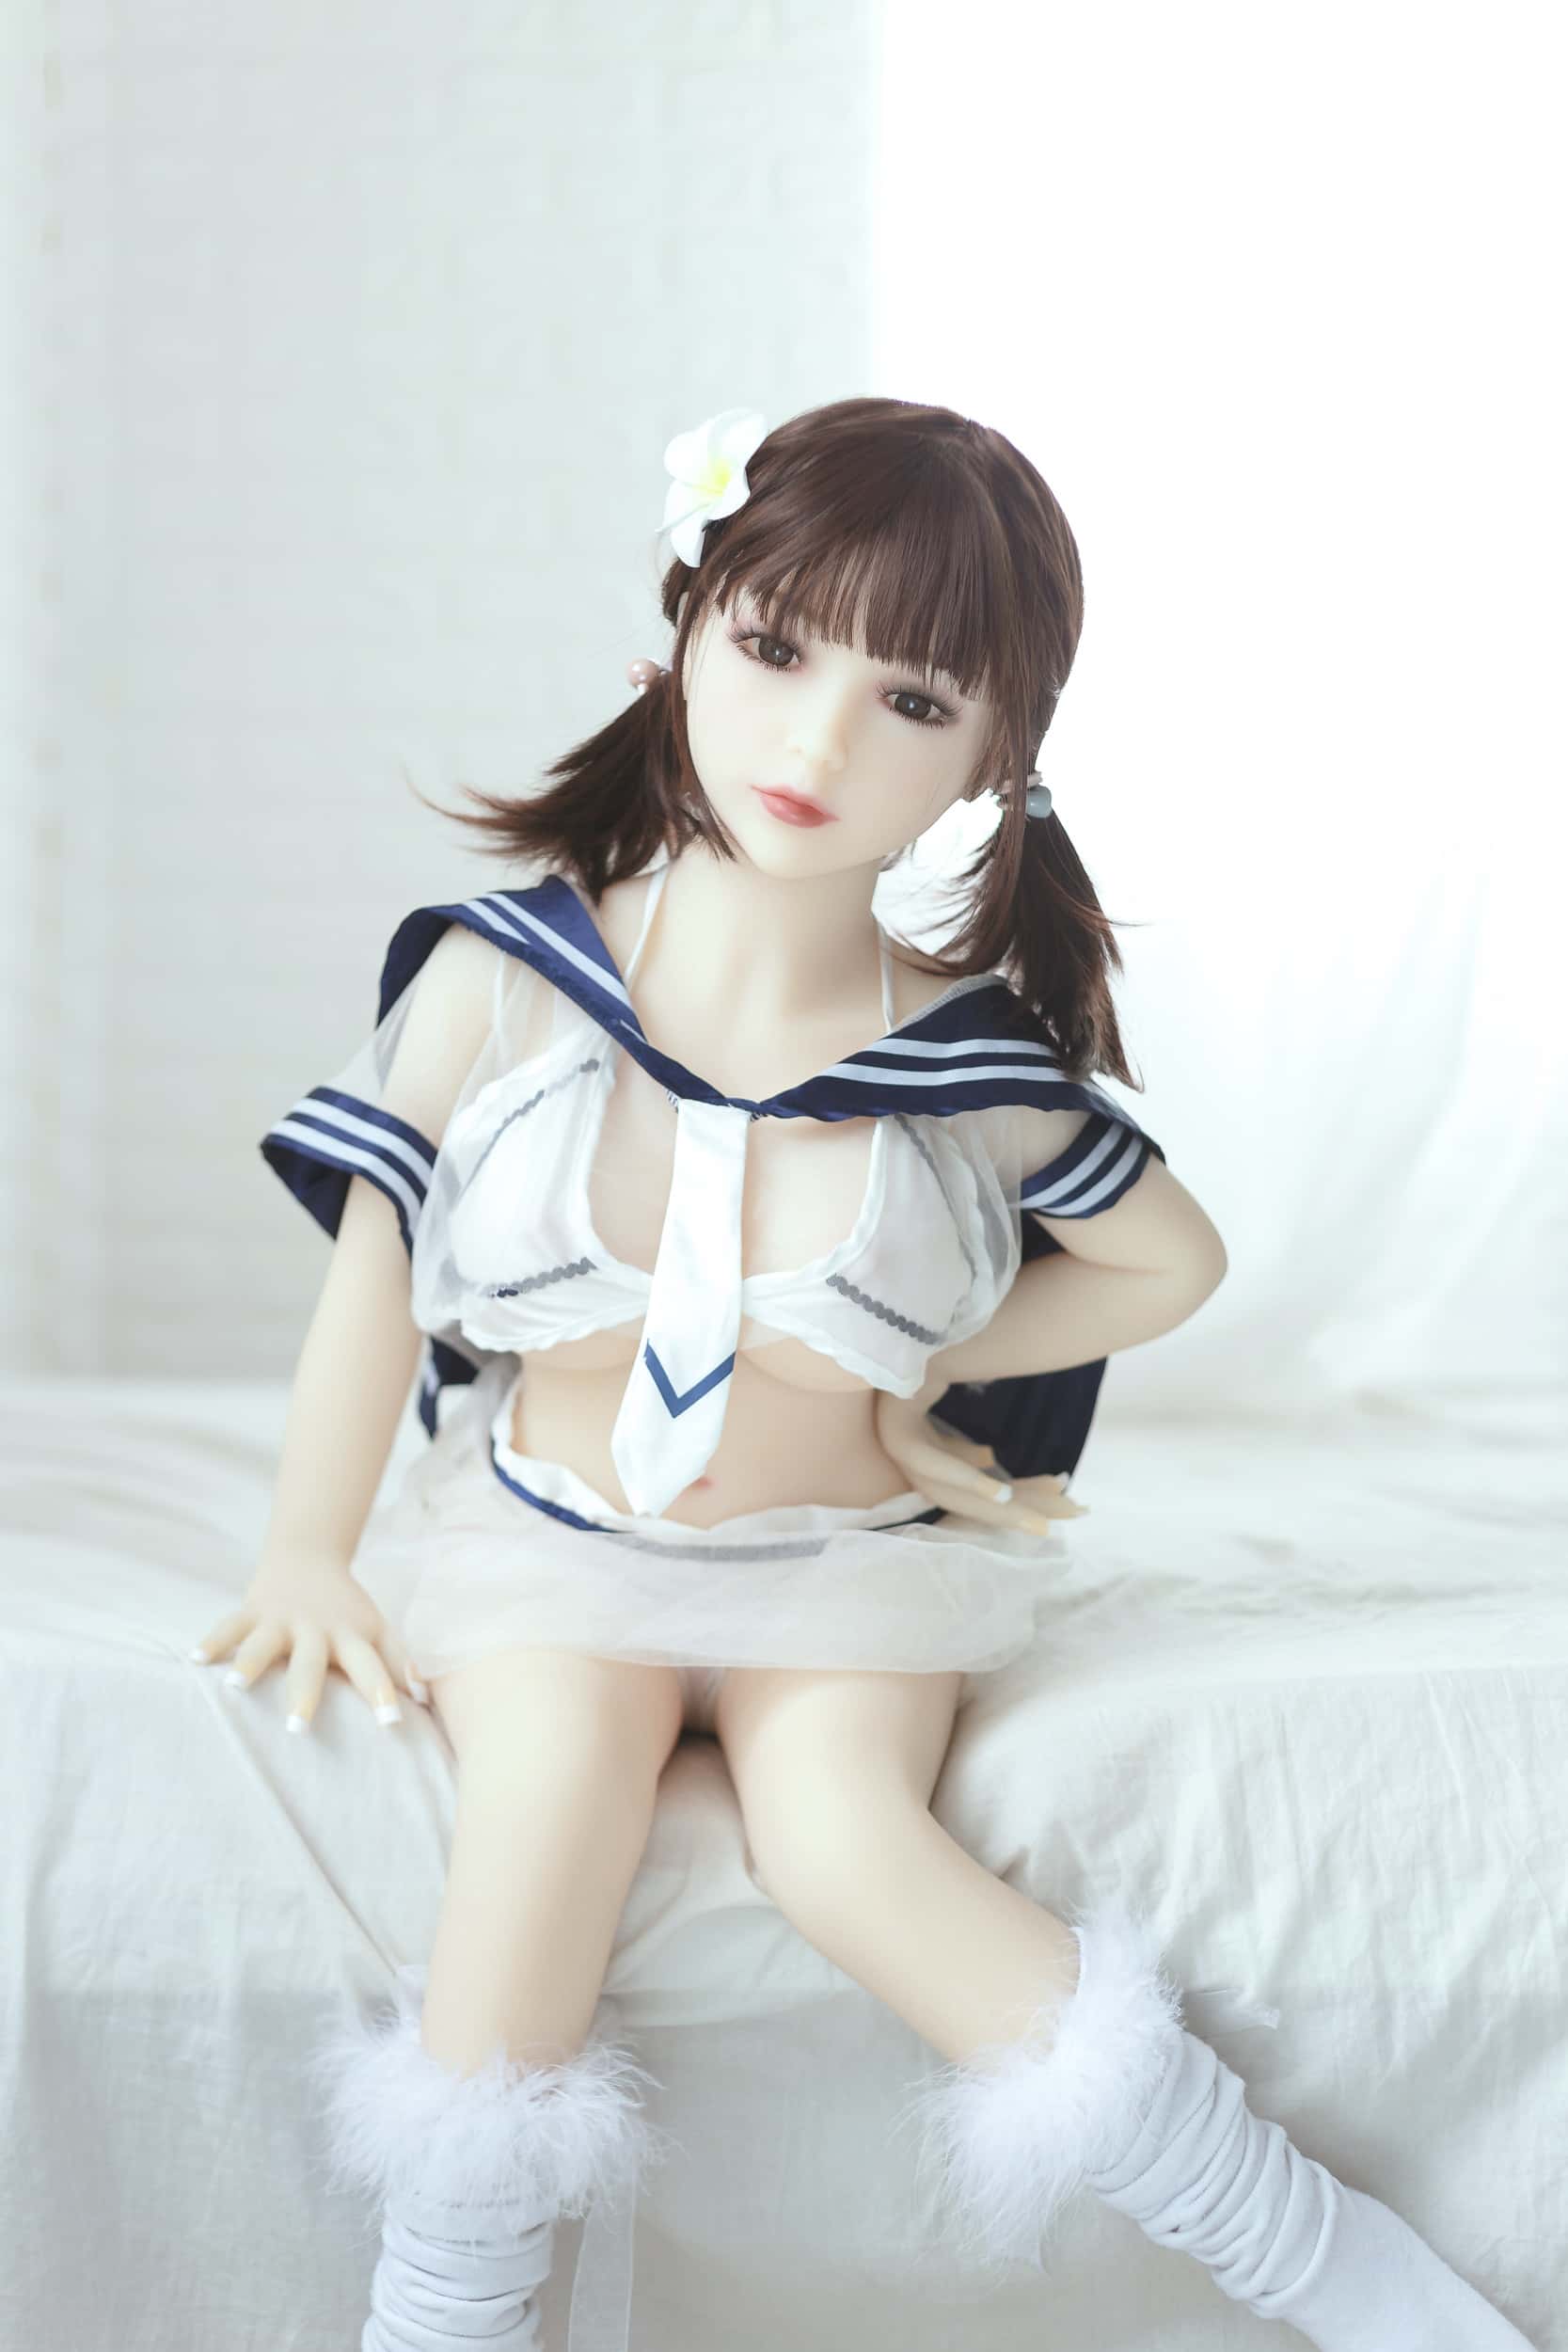 Mini Love Doll Aibei Doll 100cm (3.28') TPE Large Breast #61 - Aria (NO.502) Aibei Doll Littlelovedoll